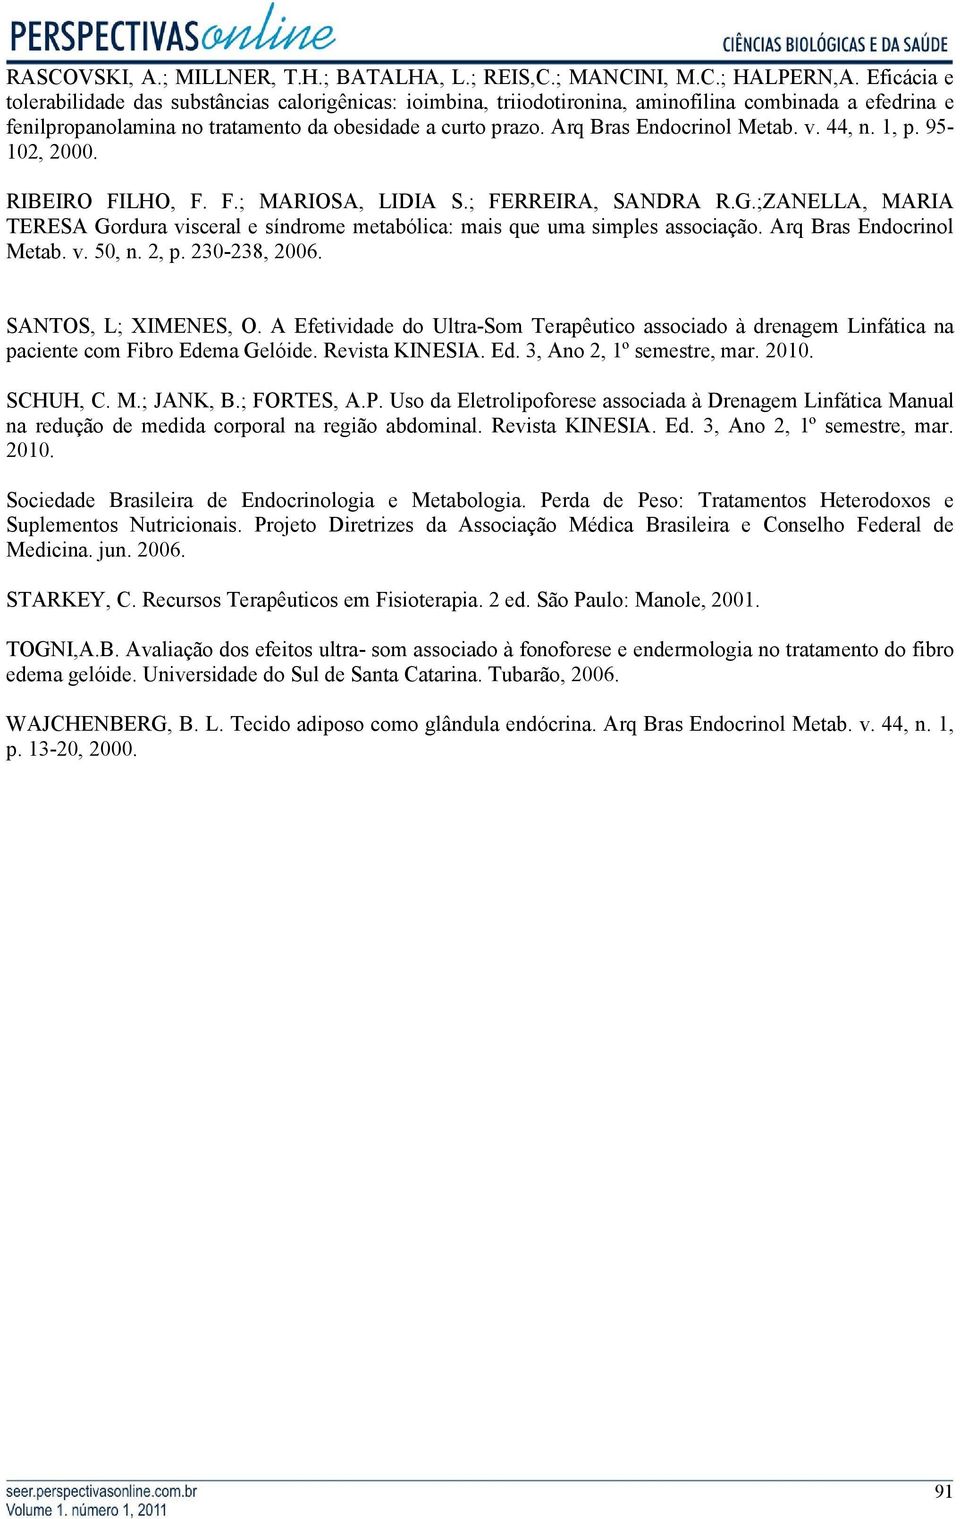 Arq Bras Endocrinol Metab. v. 44, n. 1, p. 95-102, 2000. RIBEIRO FILHO, F. F.; MARIOSA, LIDIA S.; FERREIRA, SANDRA R.G.